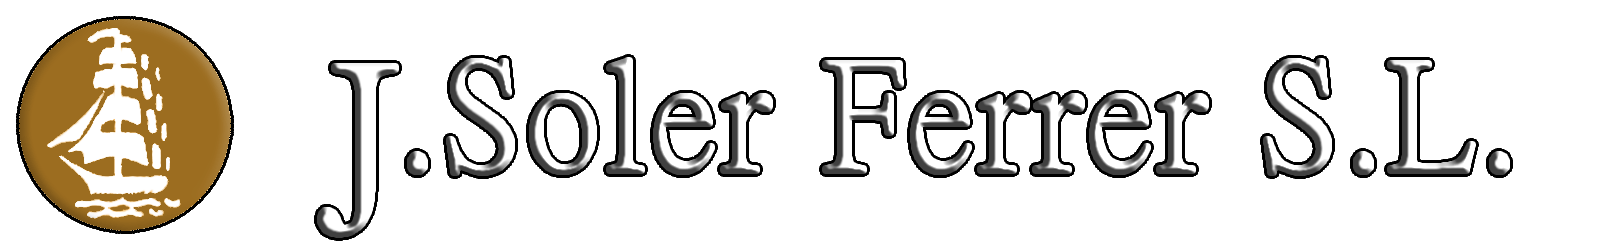 J SOLER FERRER S.L.